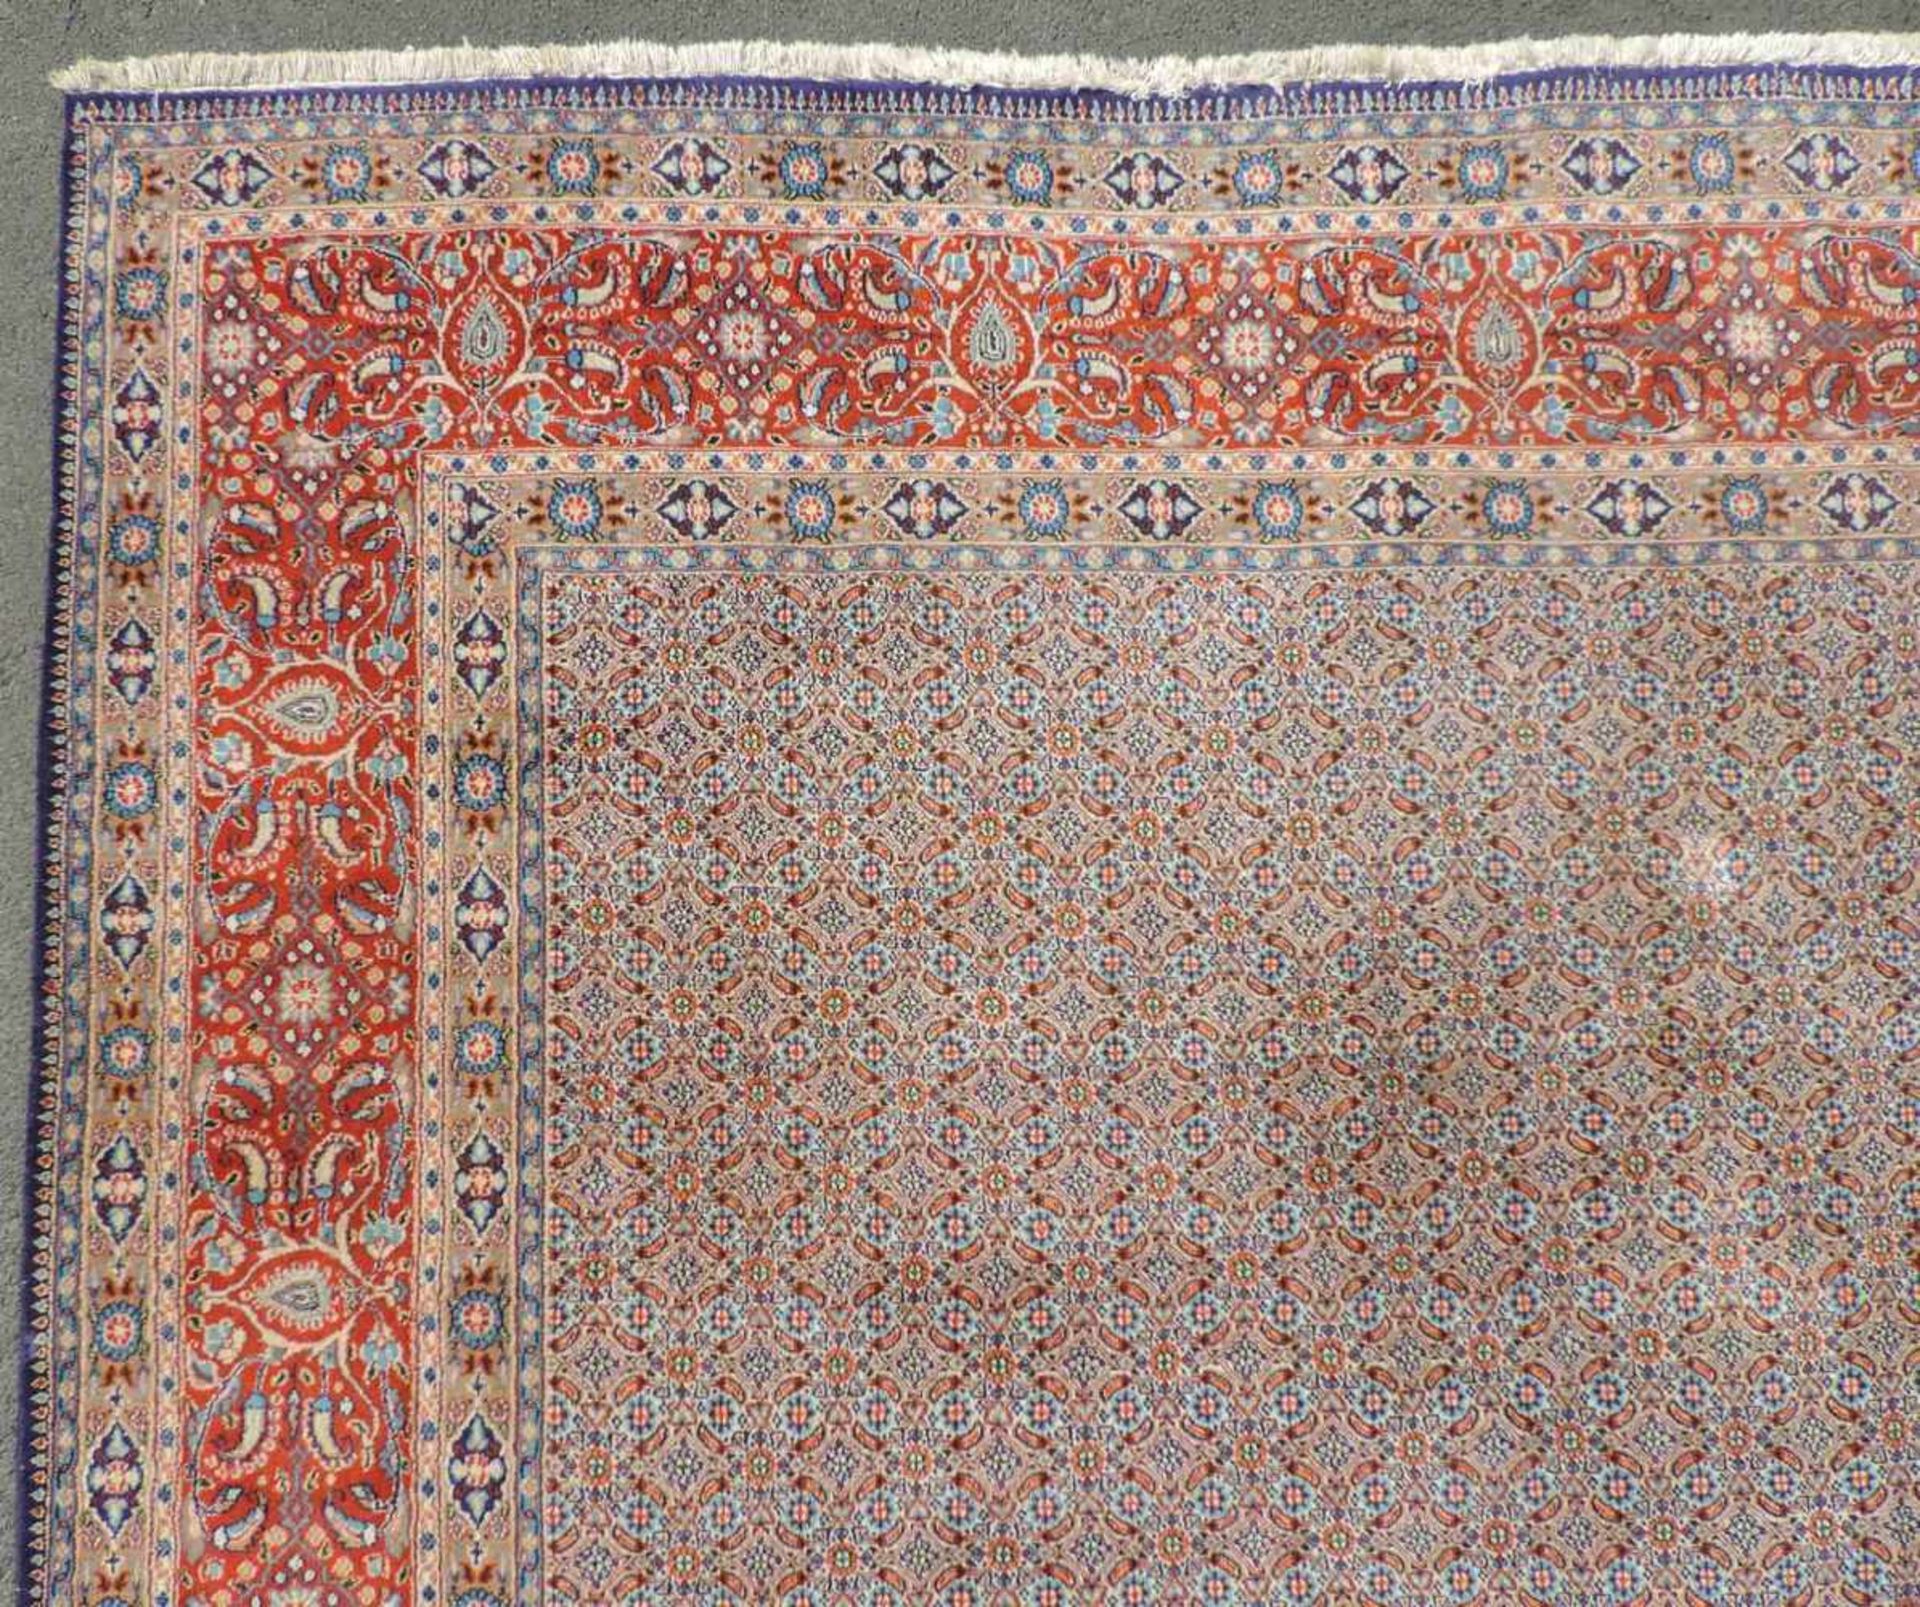 Moud Perserteppich. Iran. 406 cm x 300 cm. Handgeknüpft. Wolle auf Baumwolle. Zustand siehe Fotos. - Image 7 of 10